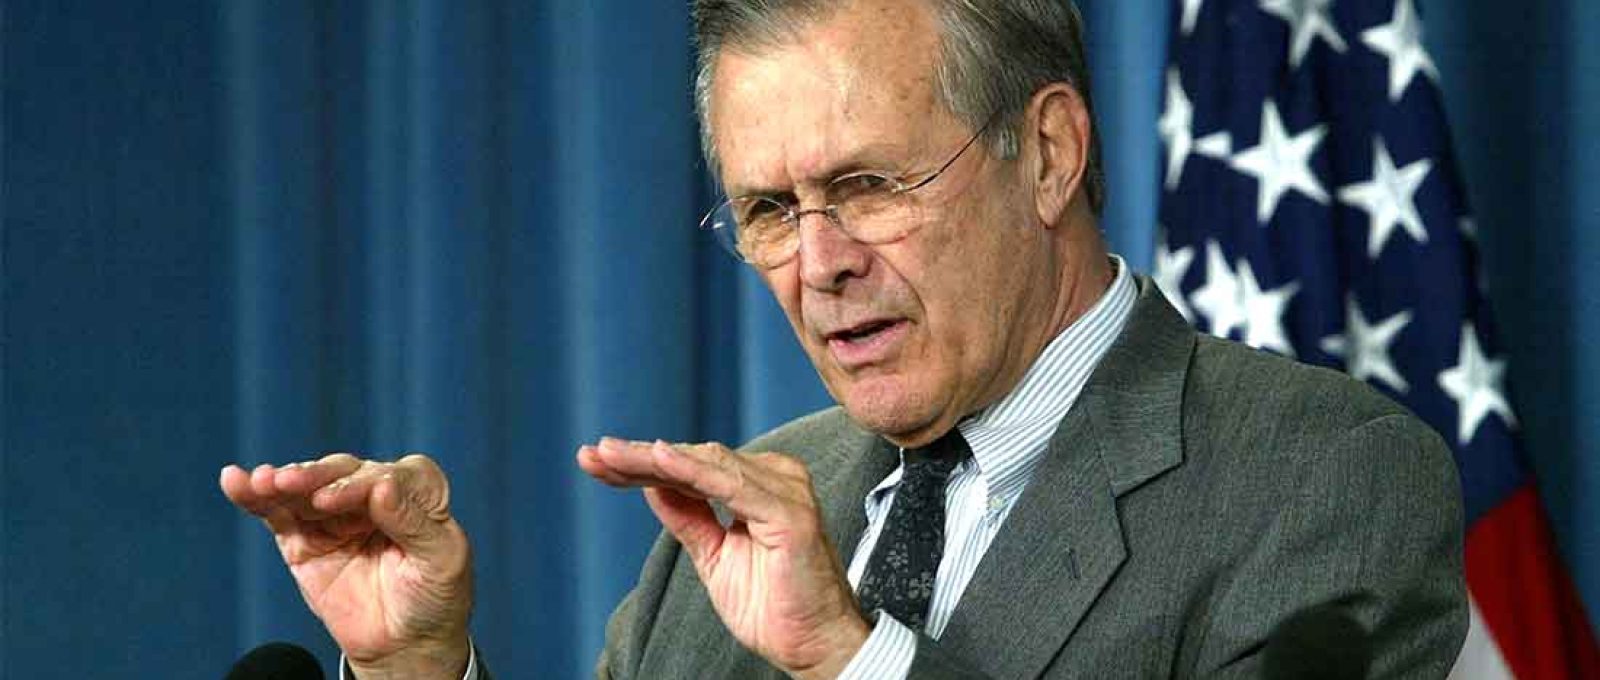 Donald Rumsfeld durante uma coletiva de imprensa no Pentágono em 23 de dezembro de 2003 (Foto: Alex Wong/Getty Images).